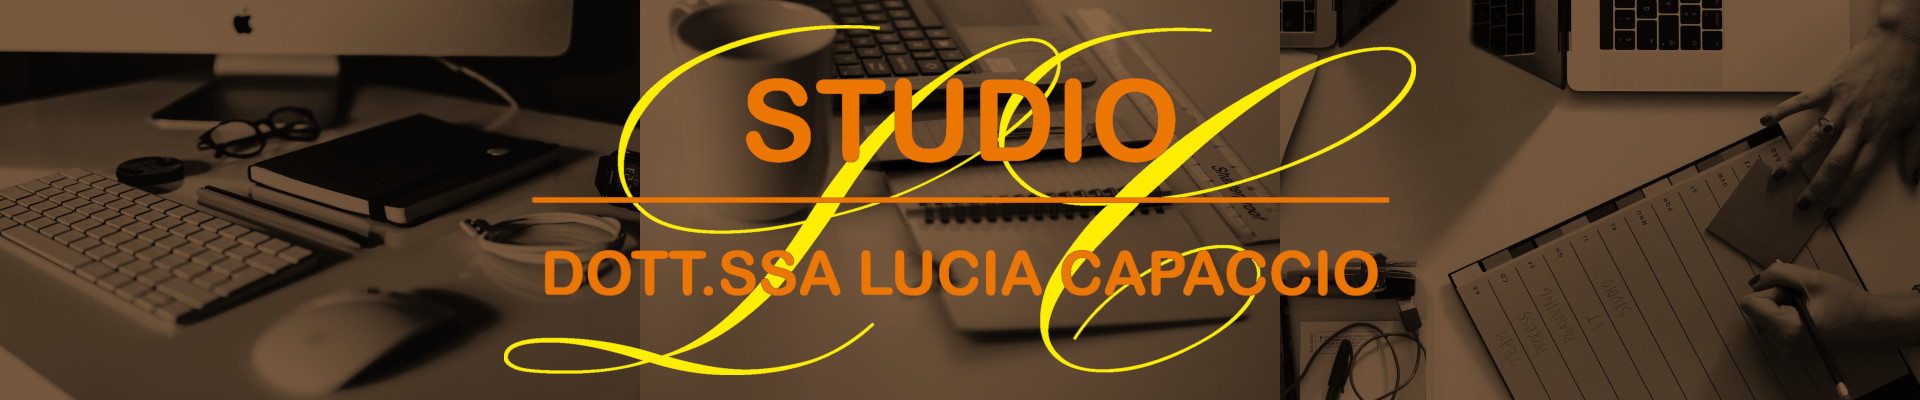 Logo studio Capaccio